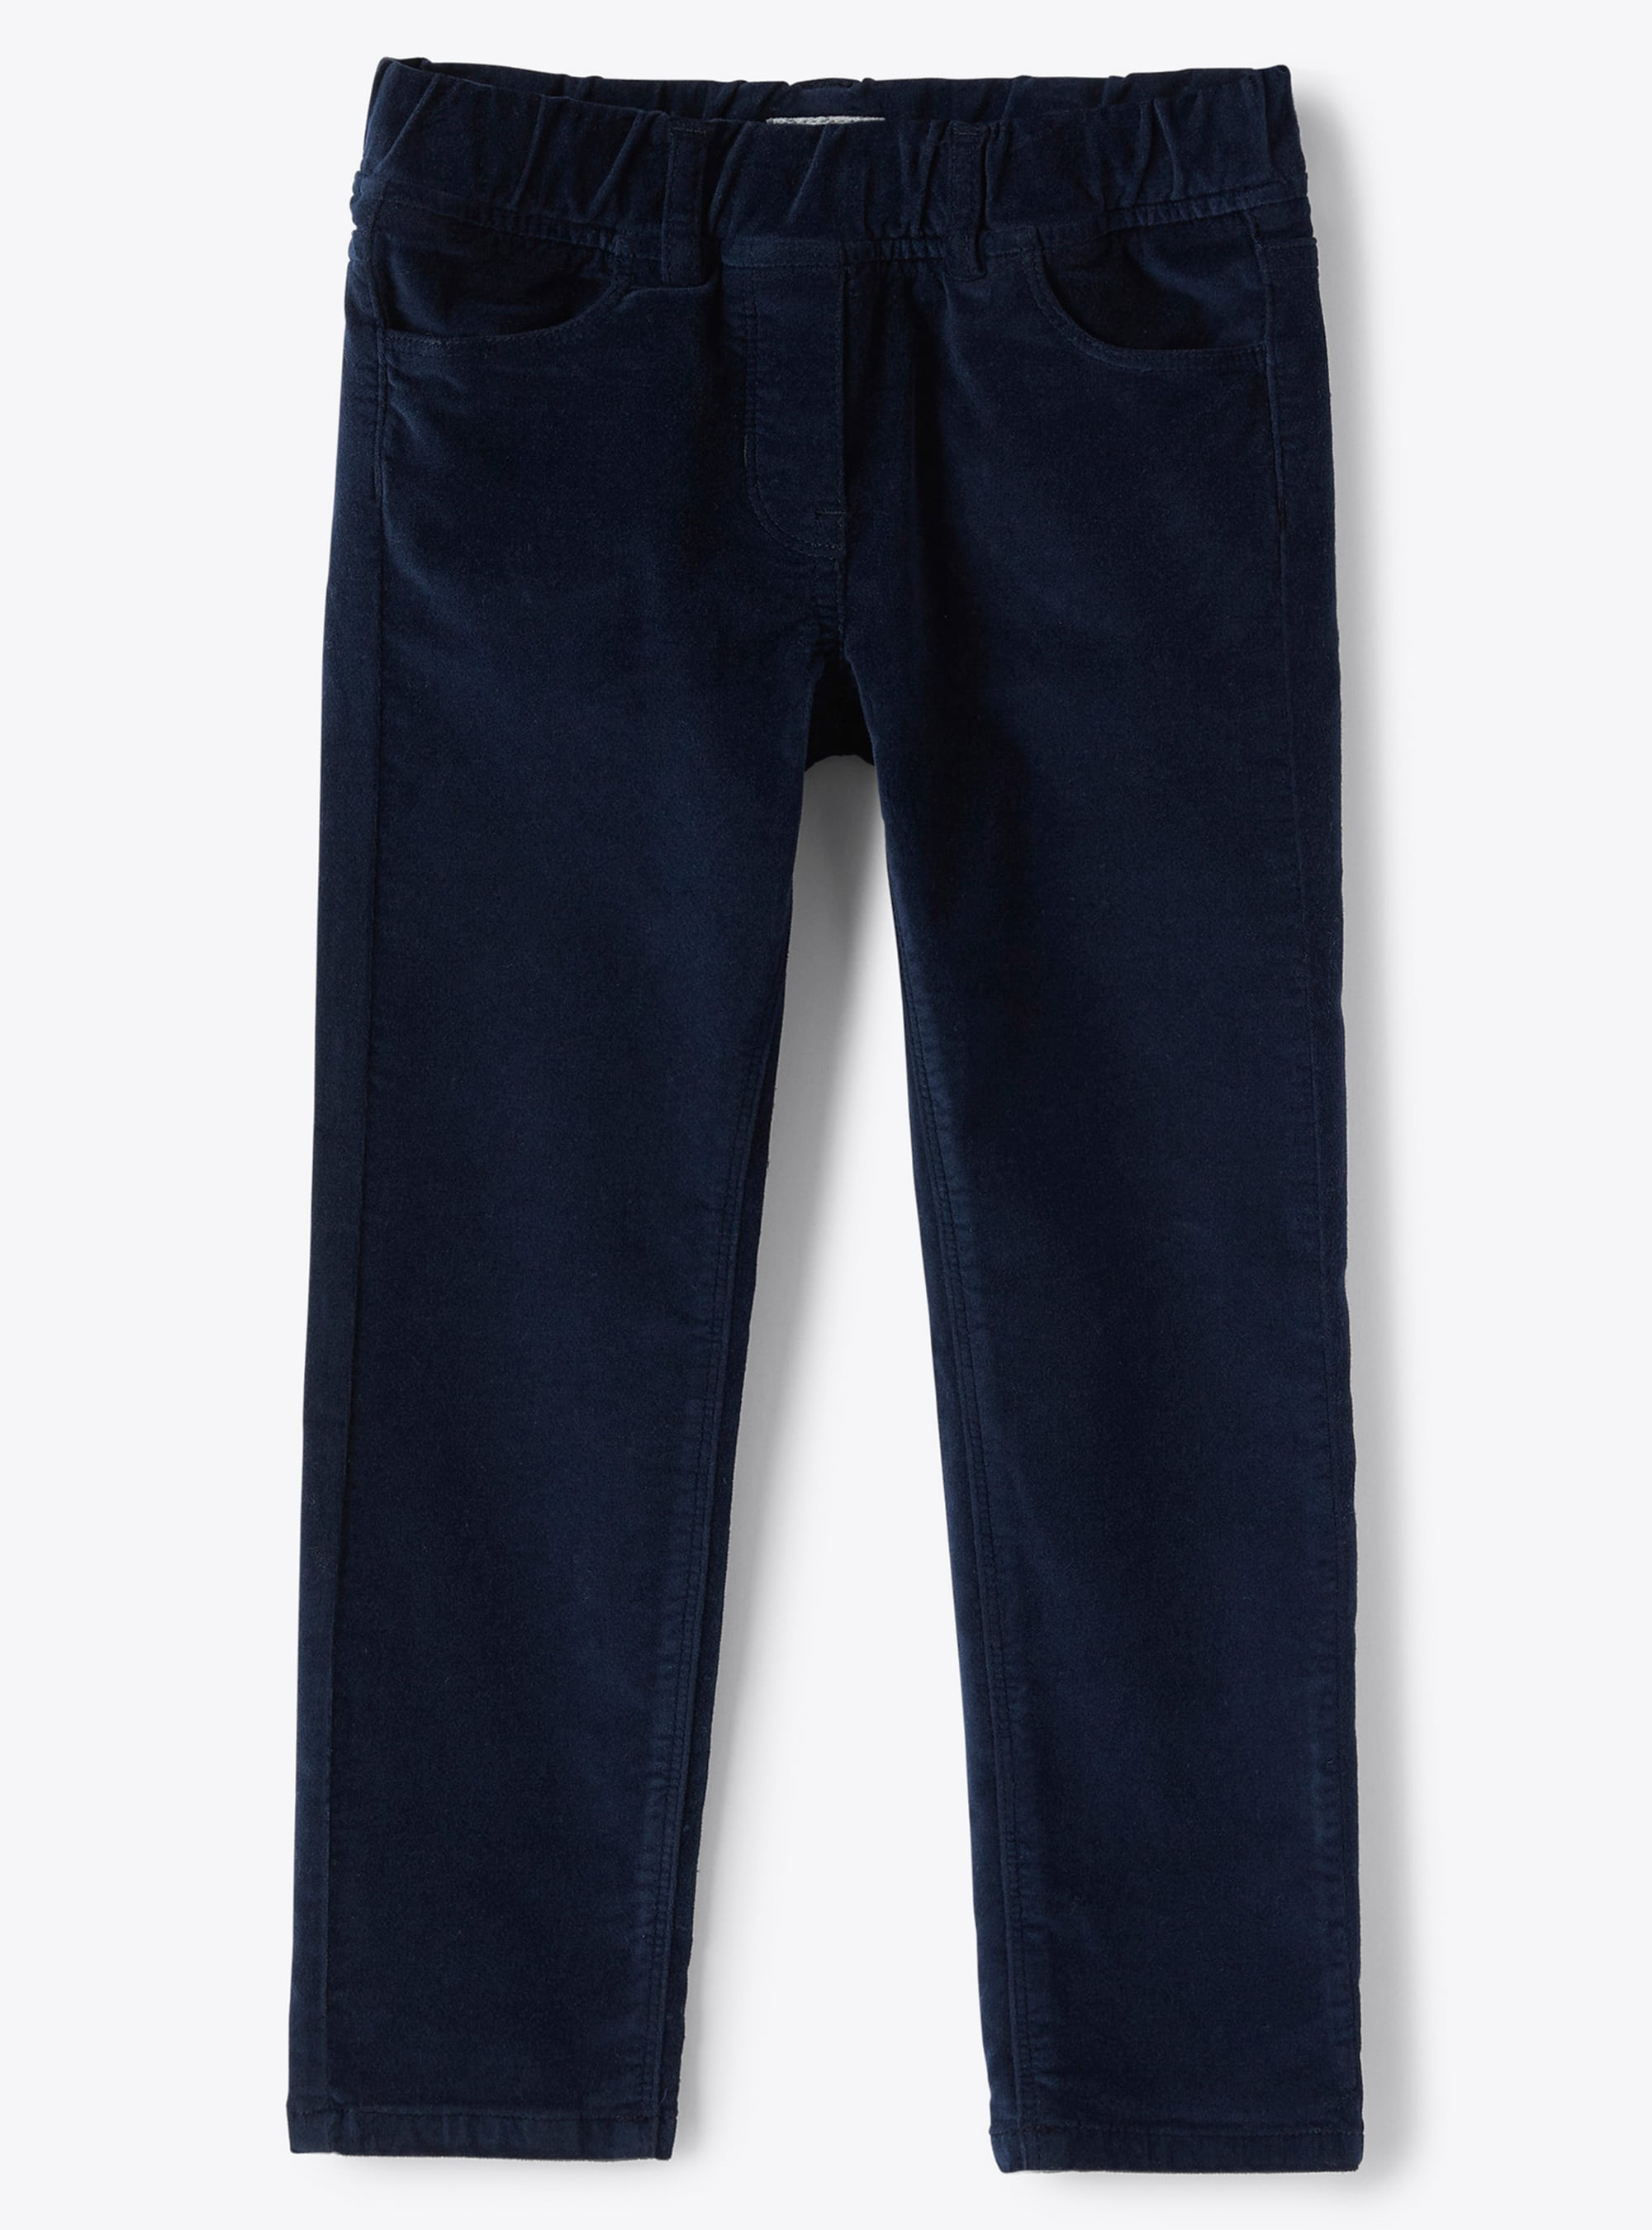 Skinny navy velvet trousers - Trousers - Il Gufo